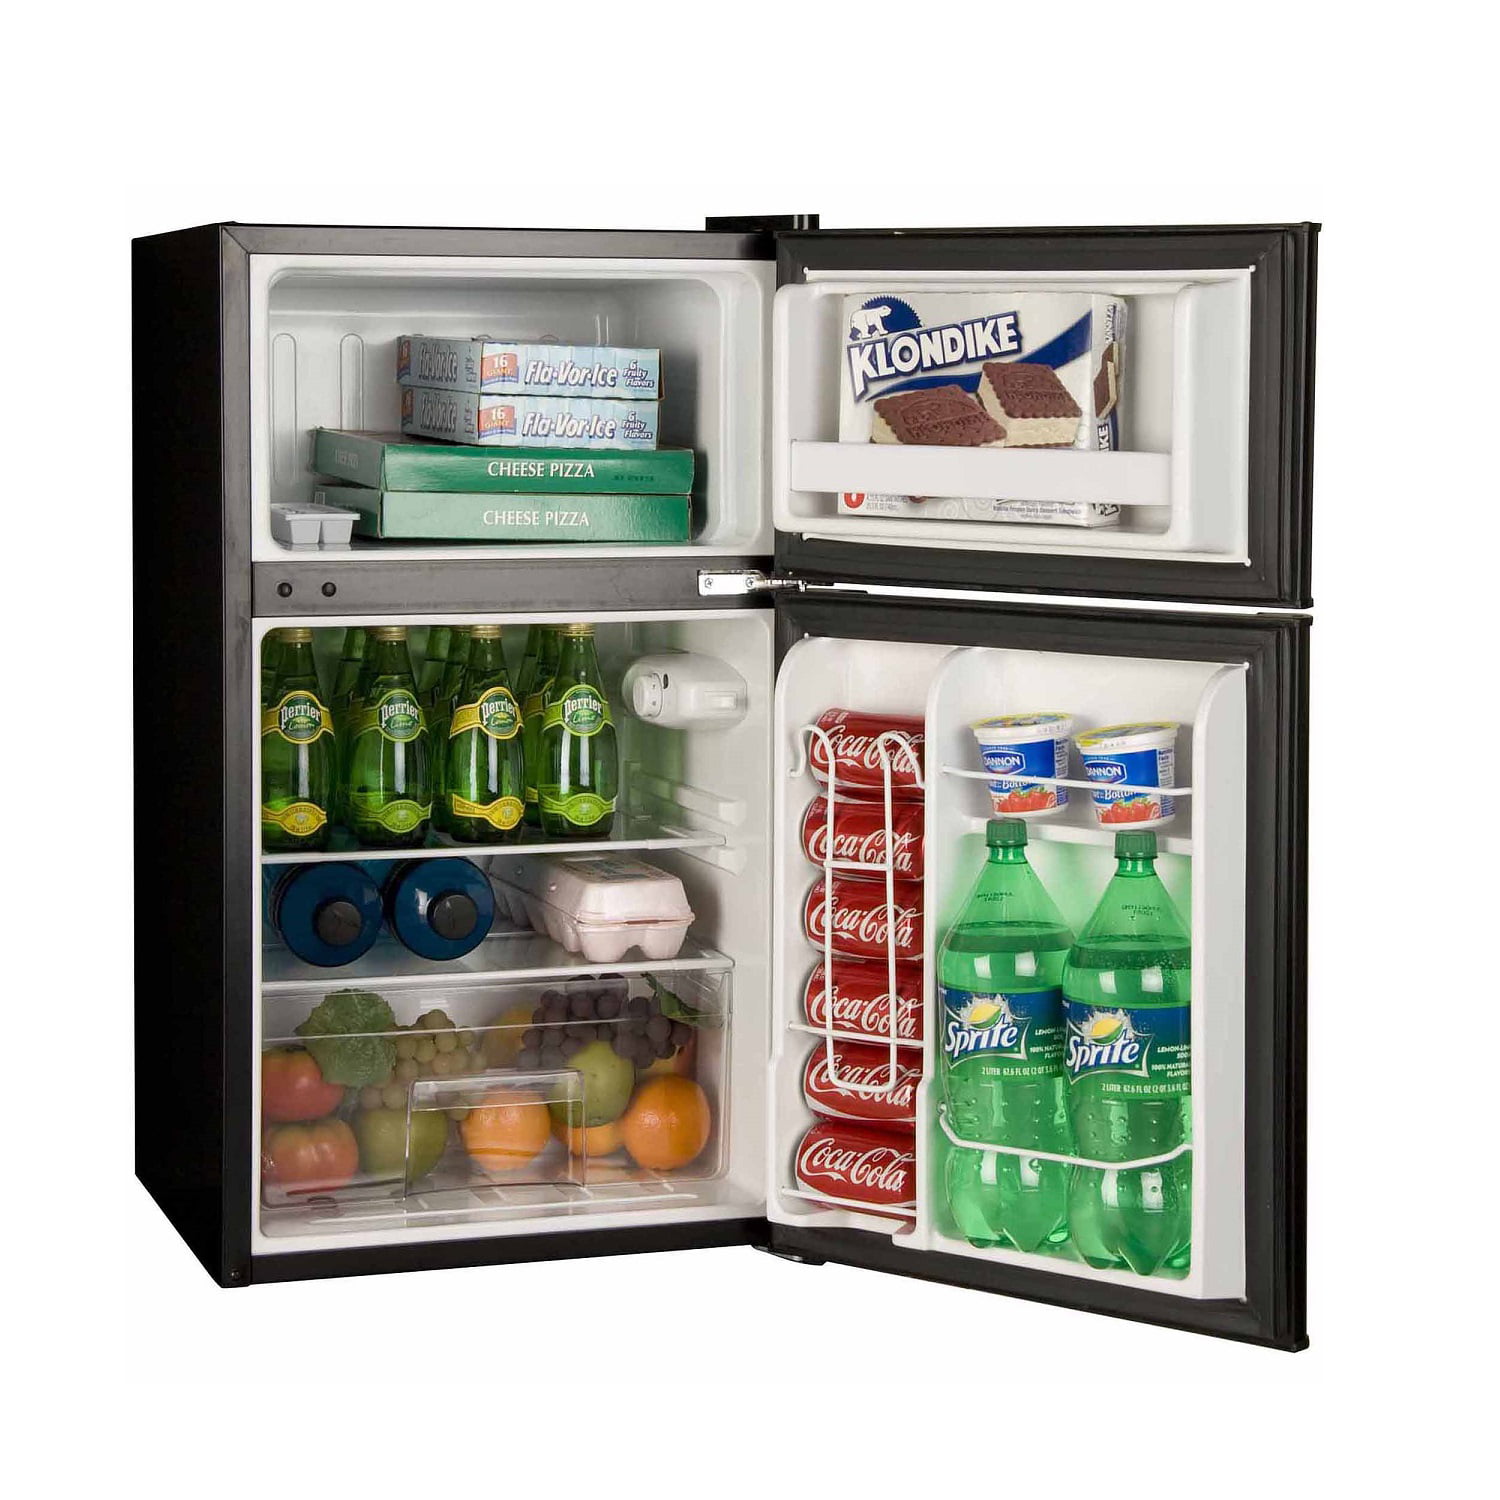 Las mejores ofertas en Haier Mini refrigeradores